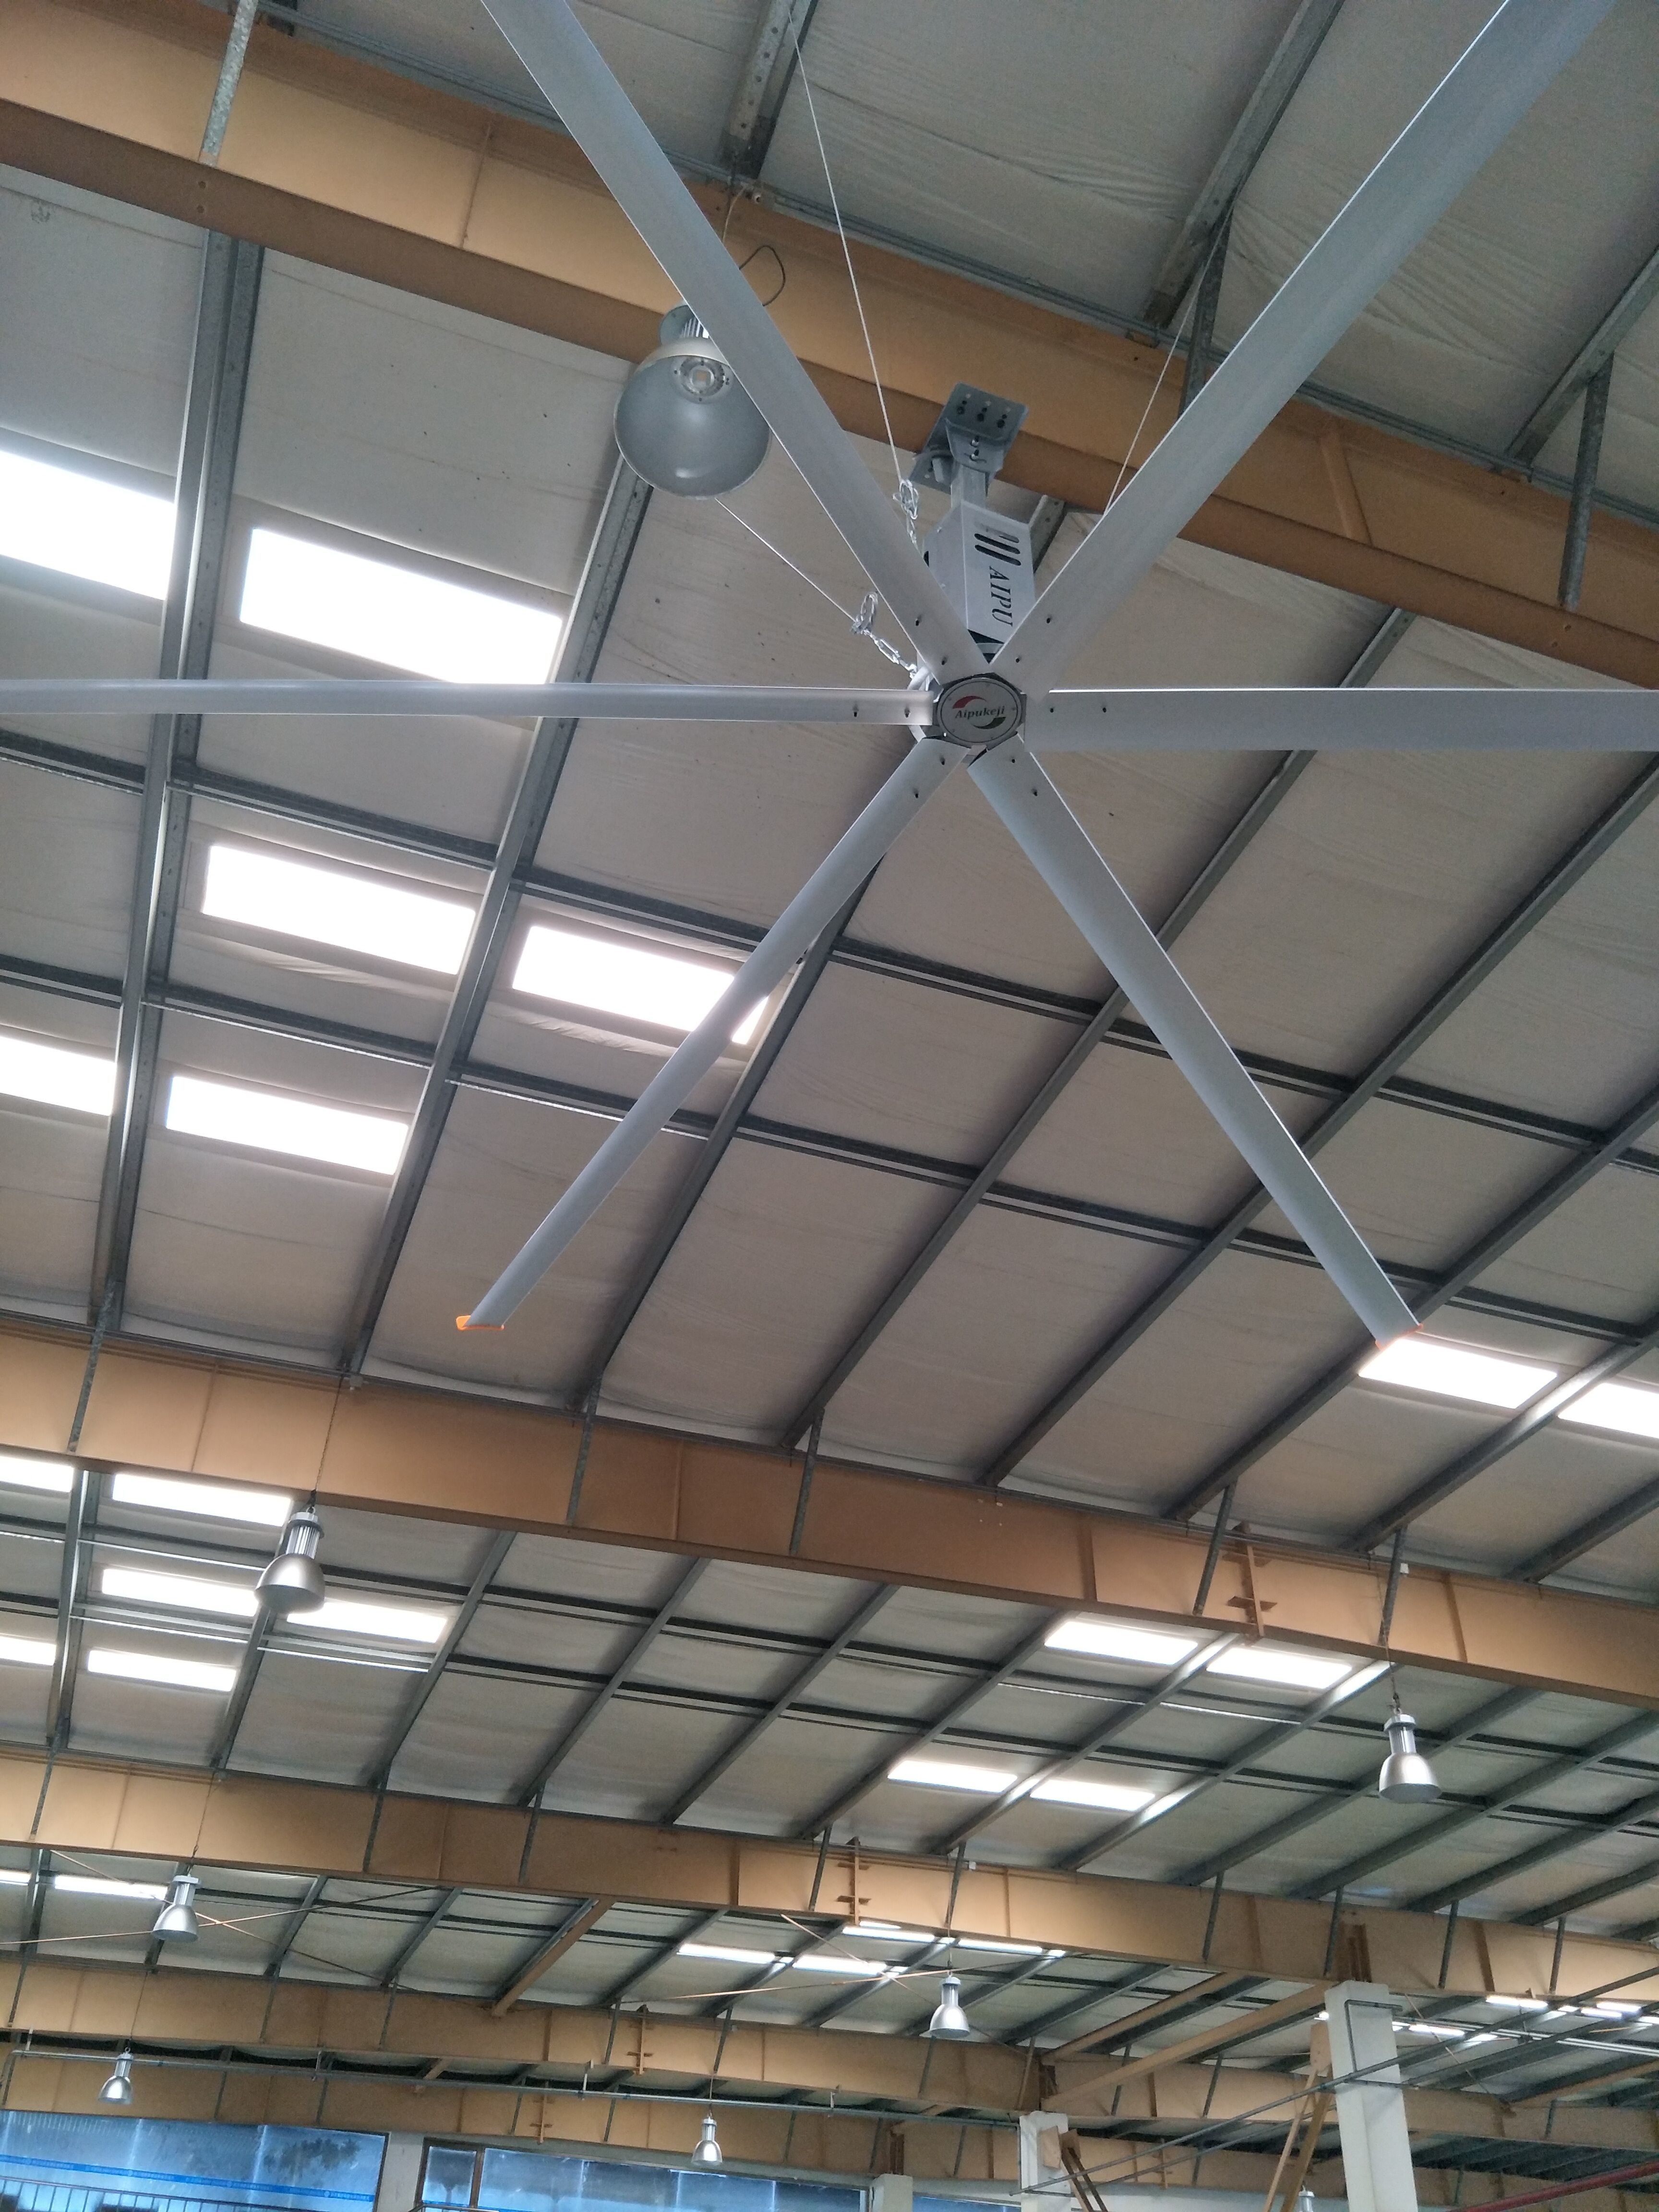 พัดลมเพดาน HVLS ขนาด 3.4m พัดลม / พัดลมเพดานขนาดใหญ่พร้อมใบมีดอลูมิเนียม